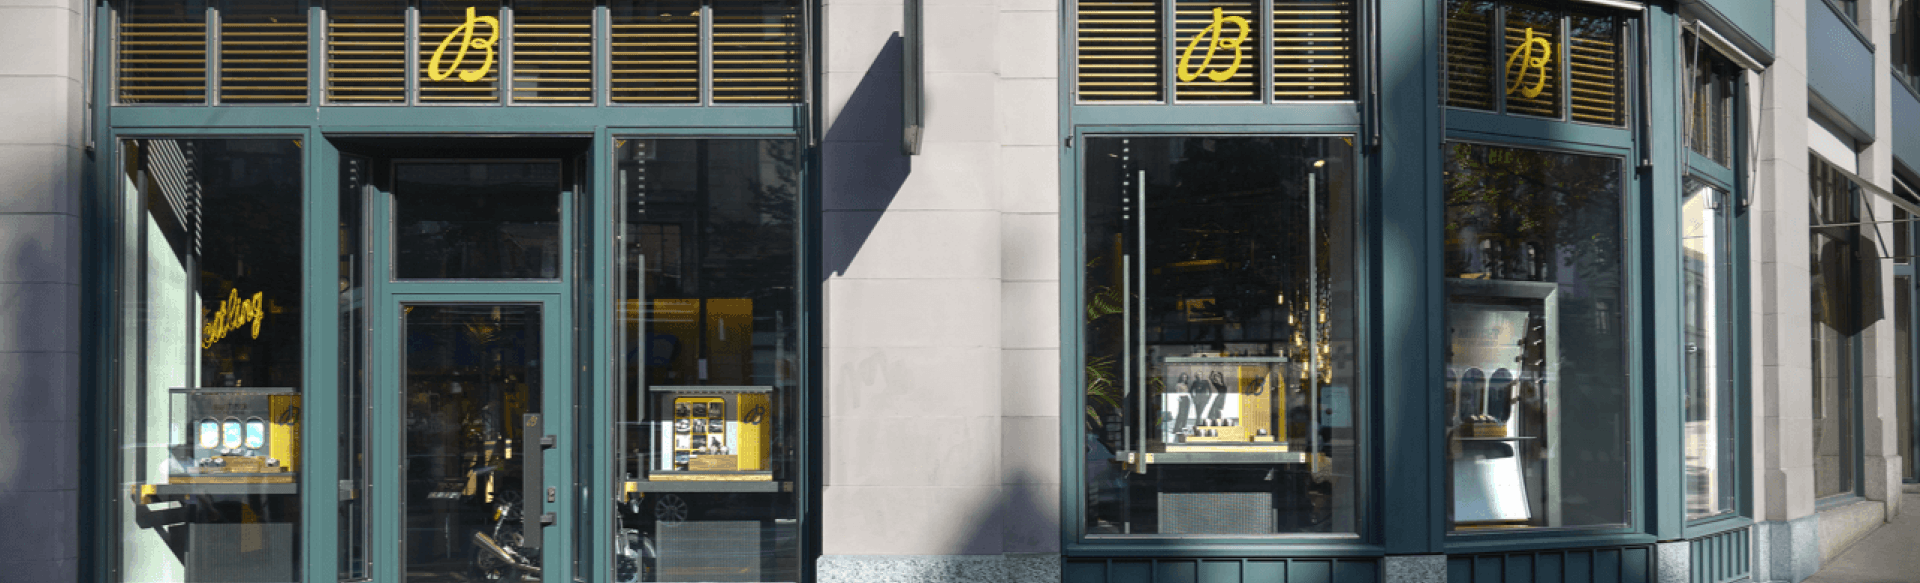 Breitling Boutique Zurich